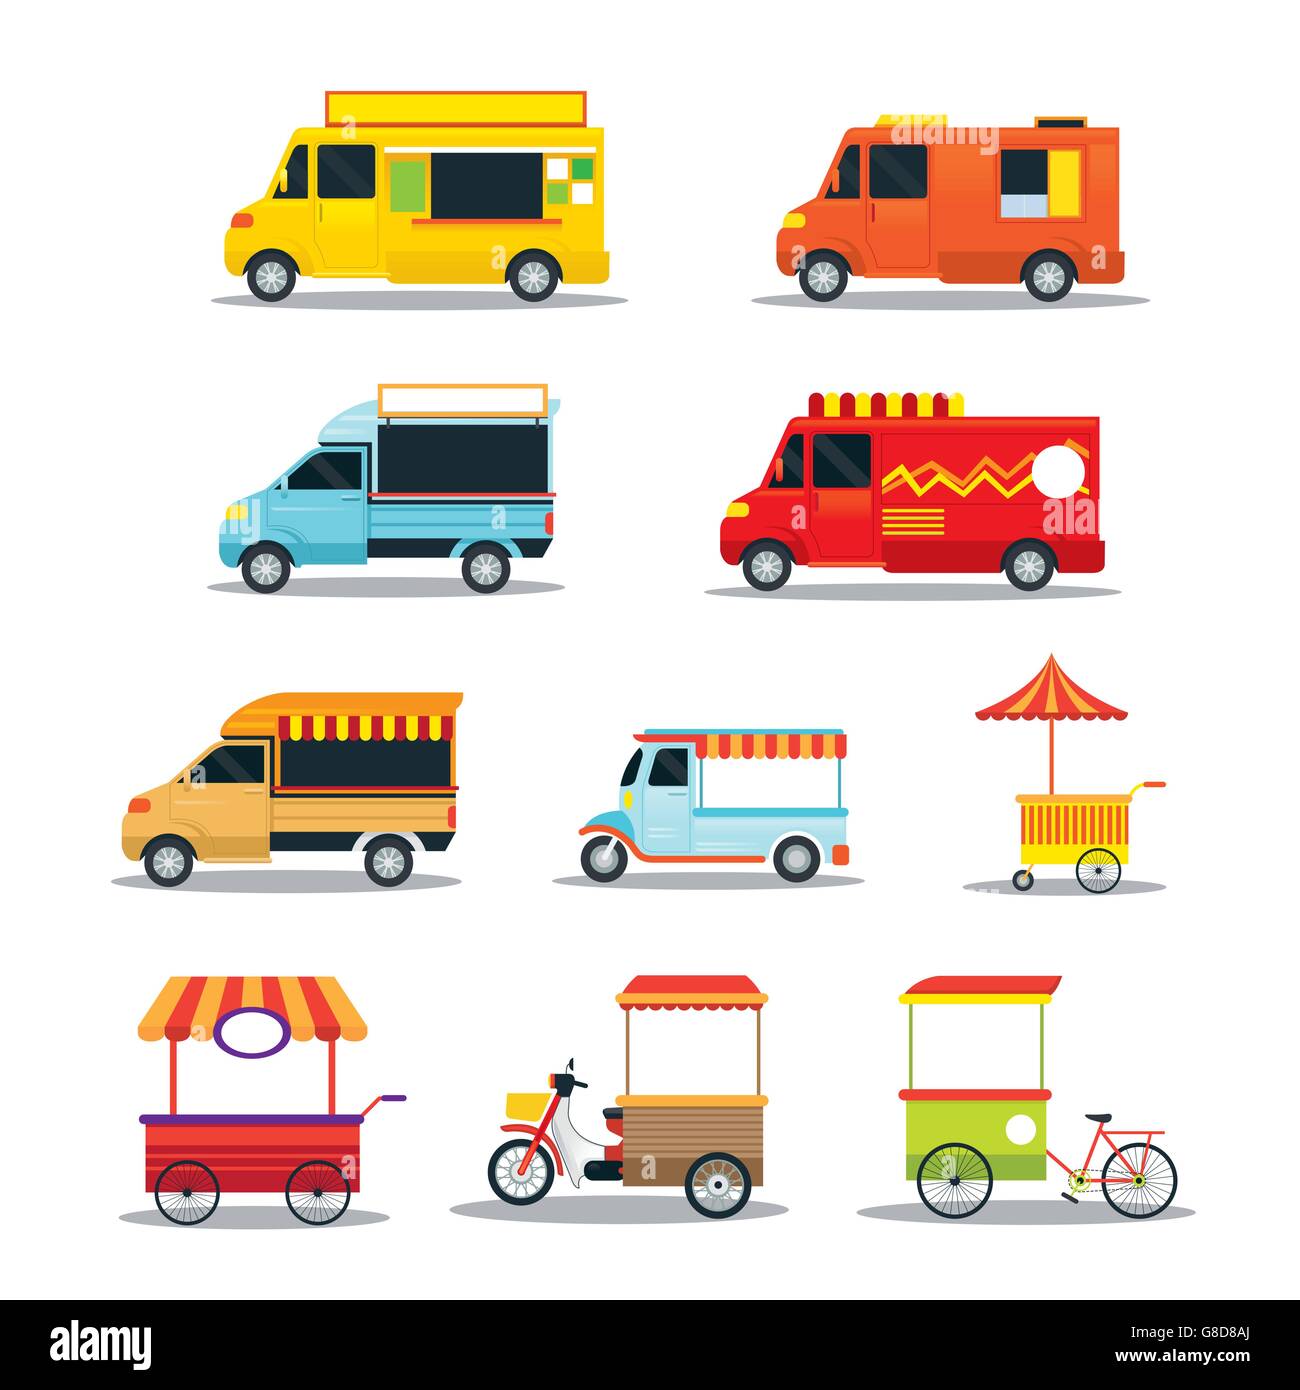 Essen Fahrzeuge, LKW, Van, Schubkarre, Farb-Set, Street Food und Fast Food Stock Vektor